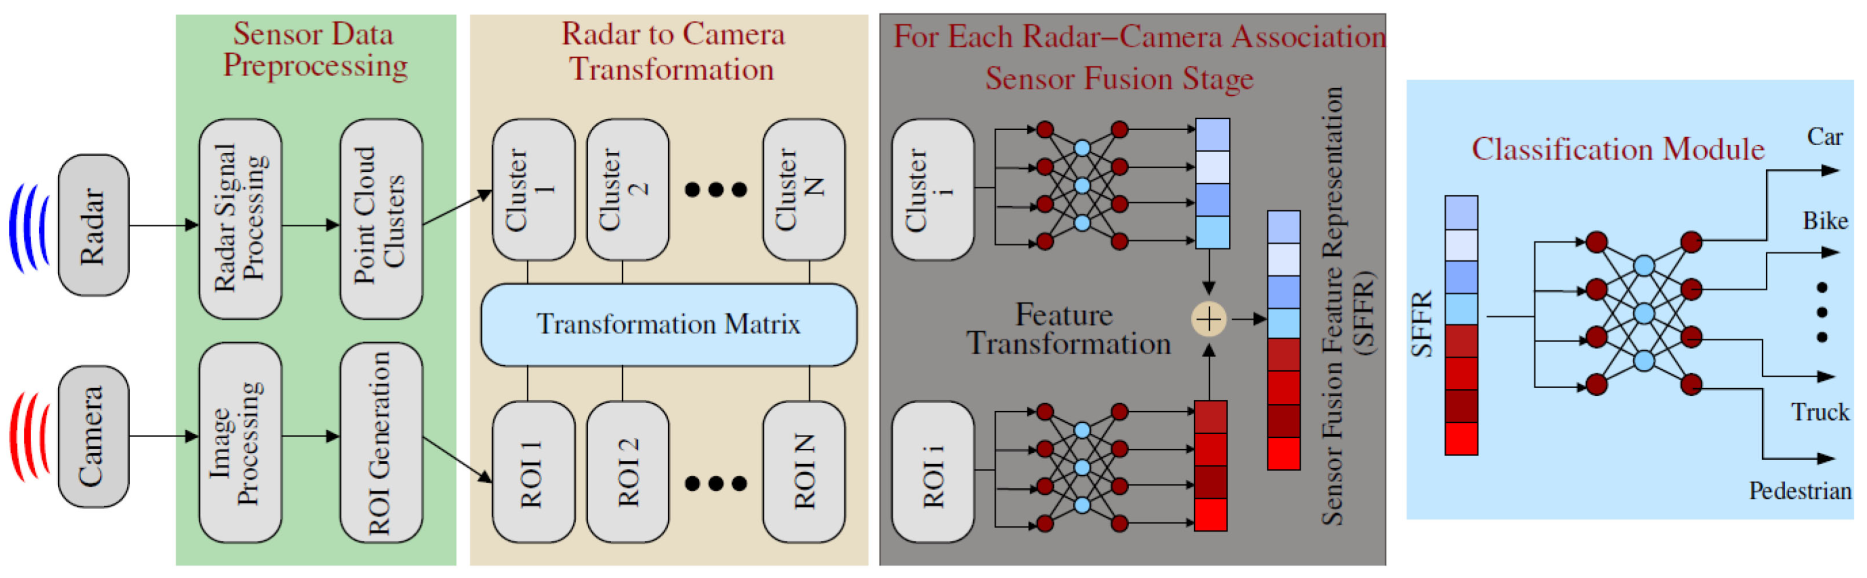 多传感器数据集自动生成的典型用例和动机，以辅助基于传感器融合的分类。雷达和相机数据使用共同校准的变换矩阵相关联。然后对每个相关的雷达图像对进行特征变换和融合，得到SFFR，用于识别被检测物体的类。请注意，未关联的雷达和摄像机数据可以被置于传感器特定的回退网络中，以确保连续检测，特别是在单个传感器故障的情况下。